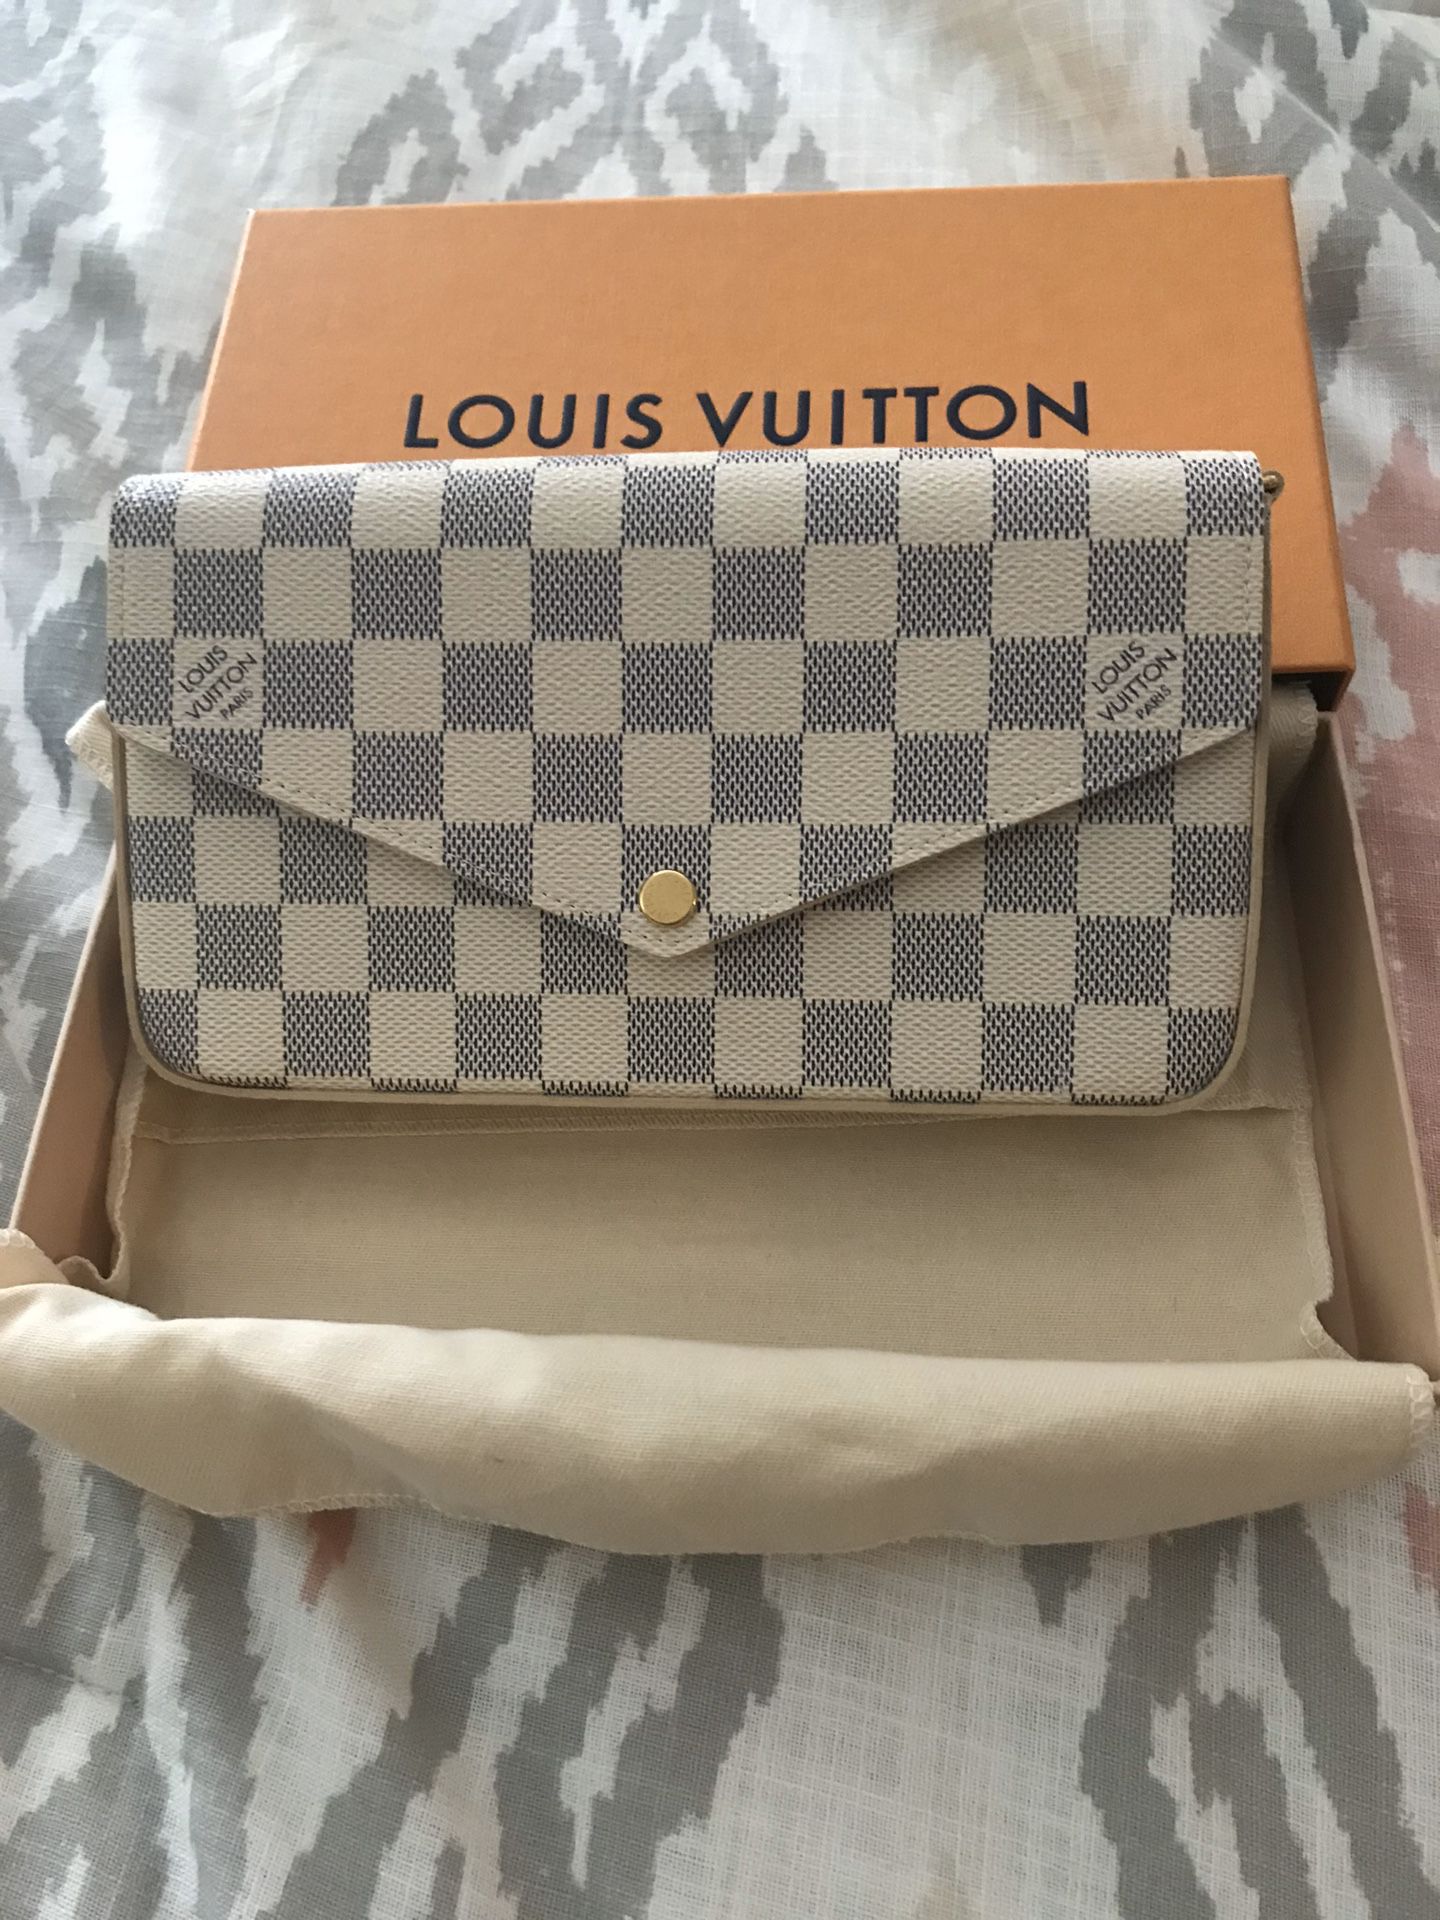 Brand new authentic Louis Vuitton felicie bag